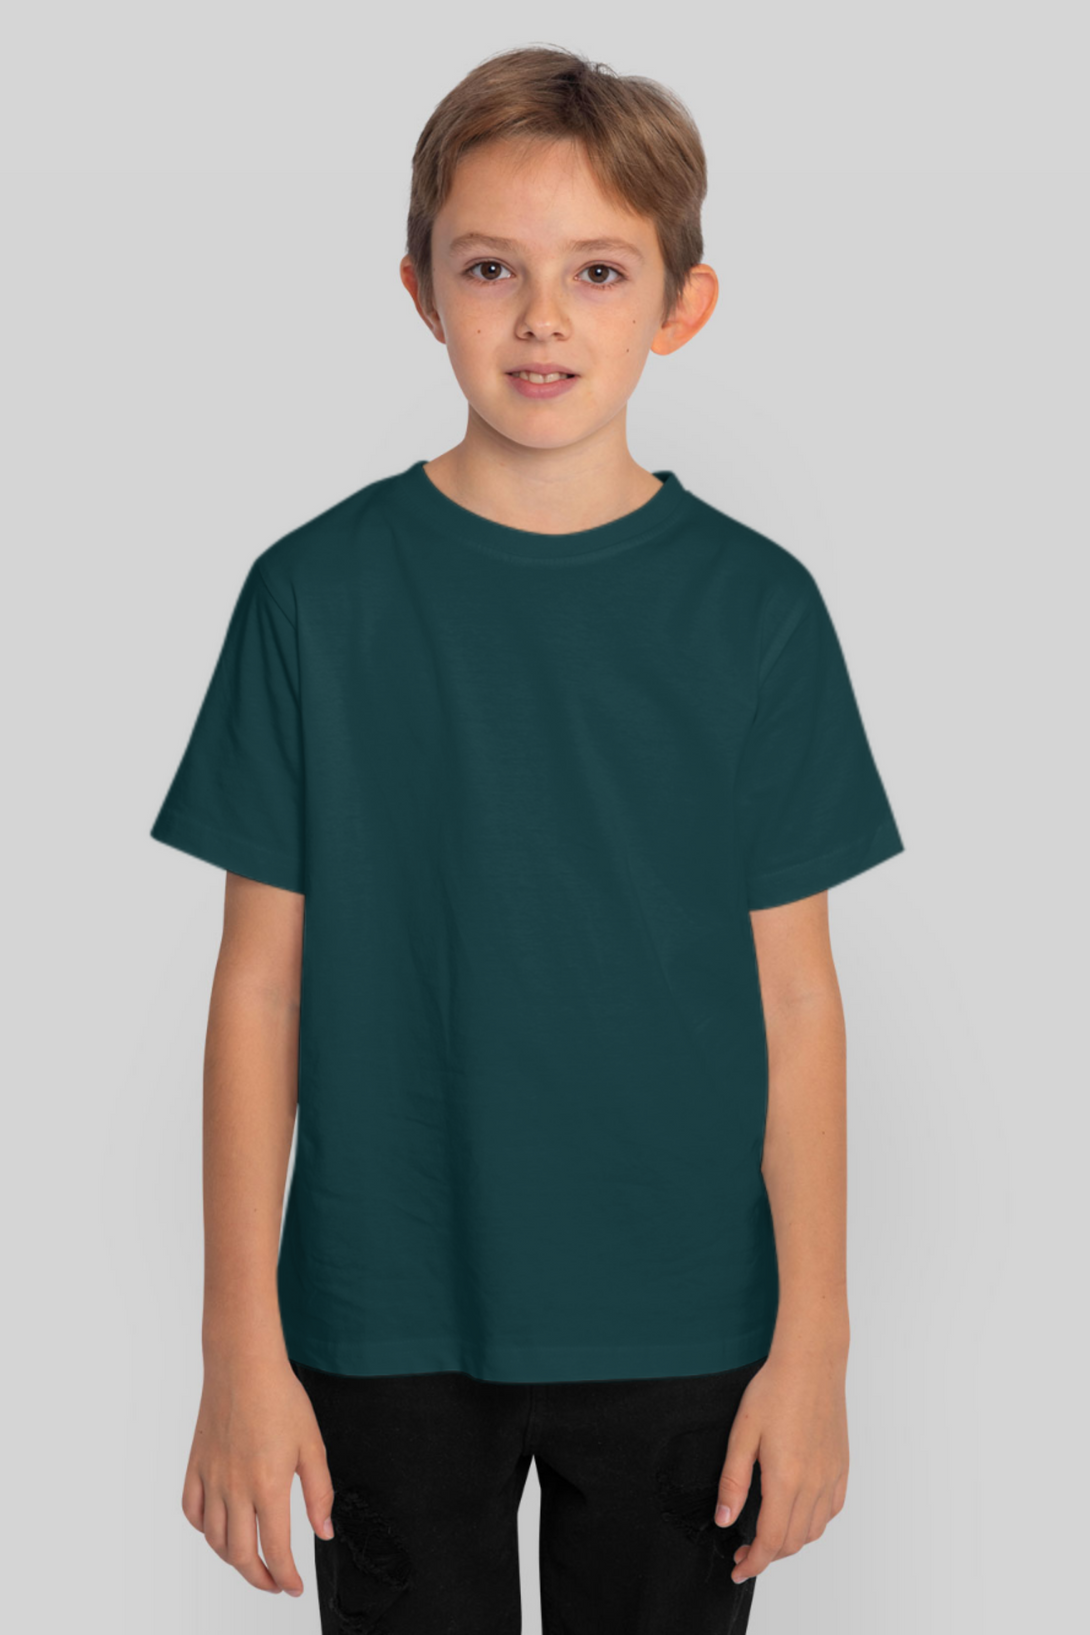 Petrol Blue T-Shirt For Boy - WowWaves